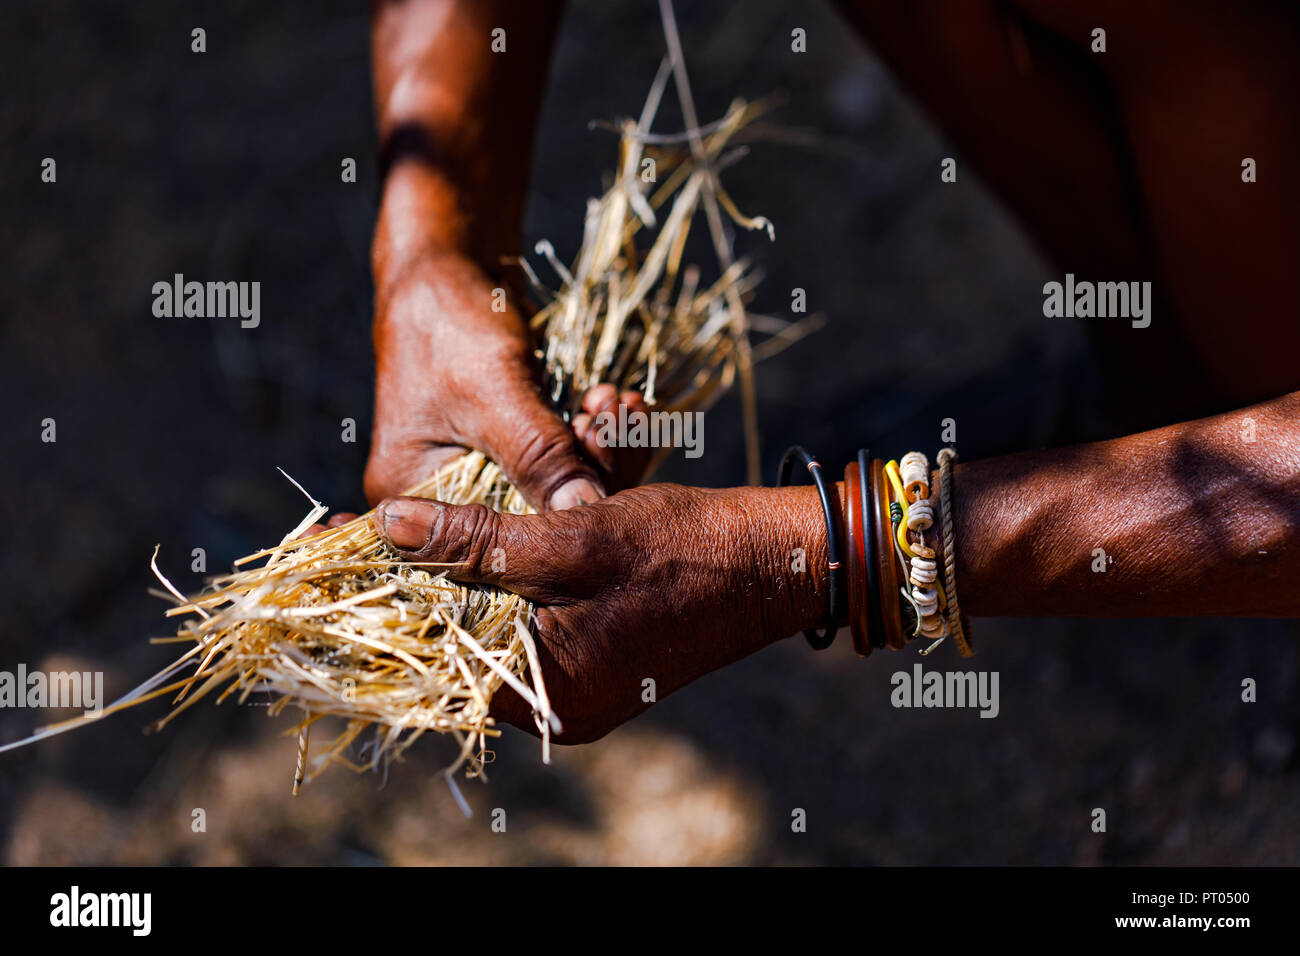 Ein alter Mann mit markanten Händen sammelt in Namibia Stroh, um auf traditionelle Weise Feuer zu machen Stock Photo